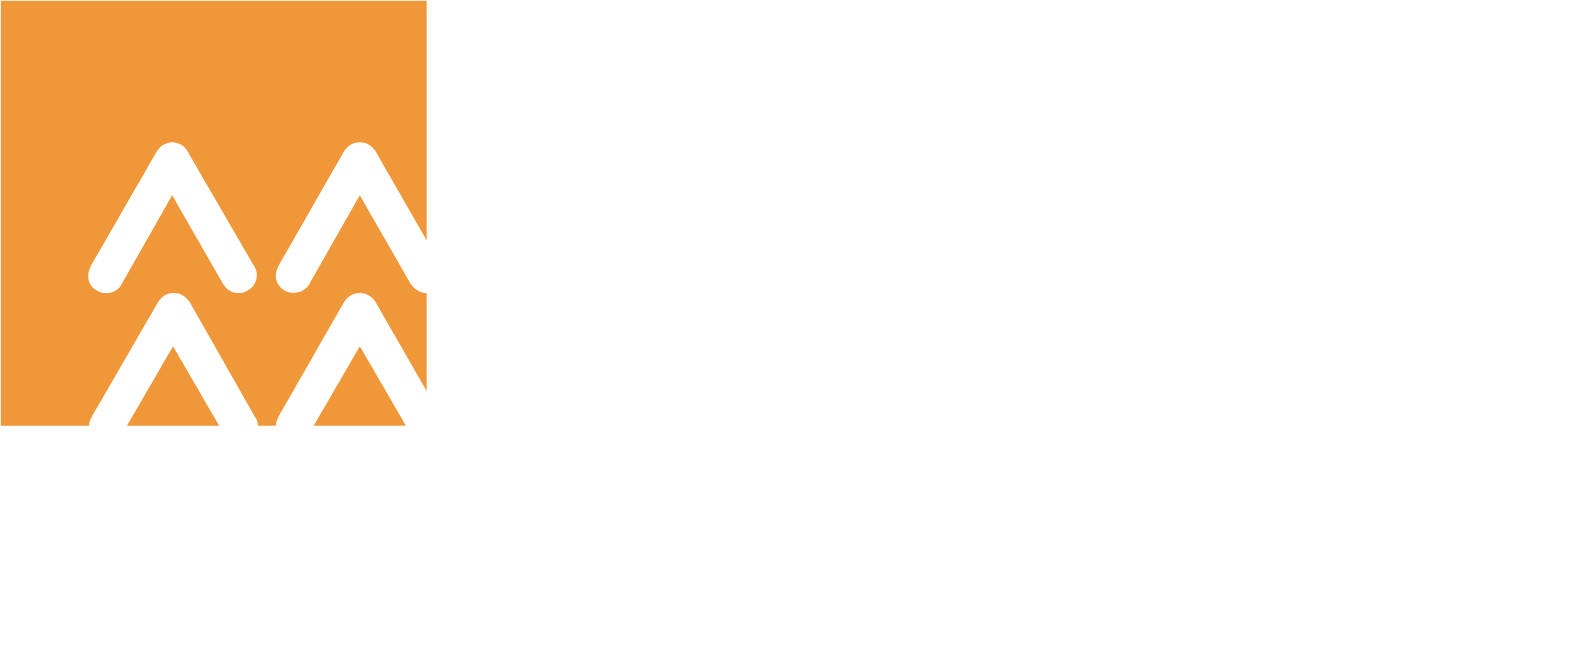 China Resources Land logo grand pour les fonds sombres (PNG transparent)